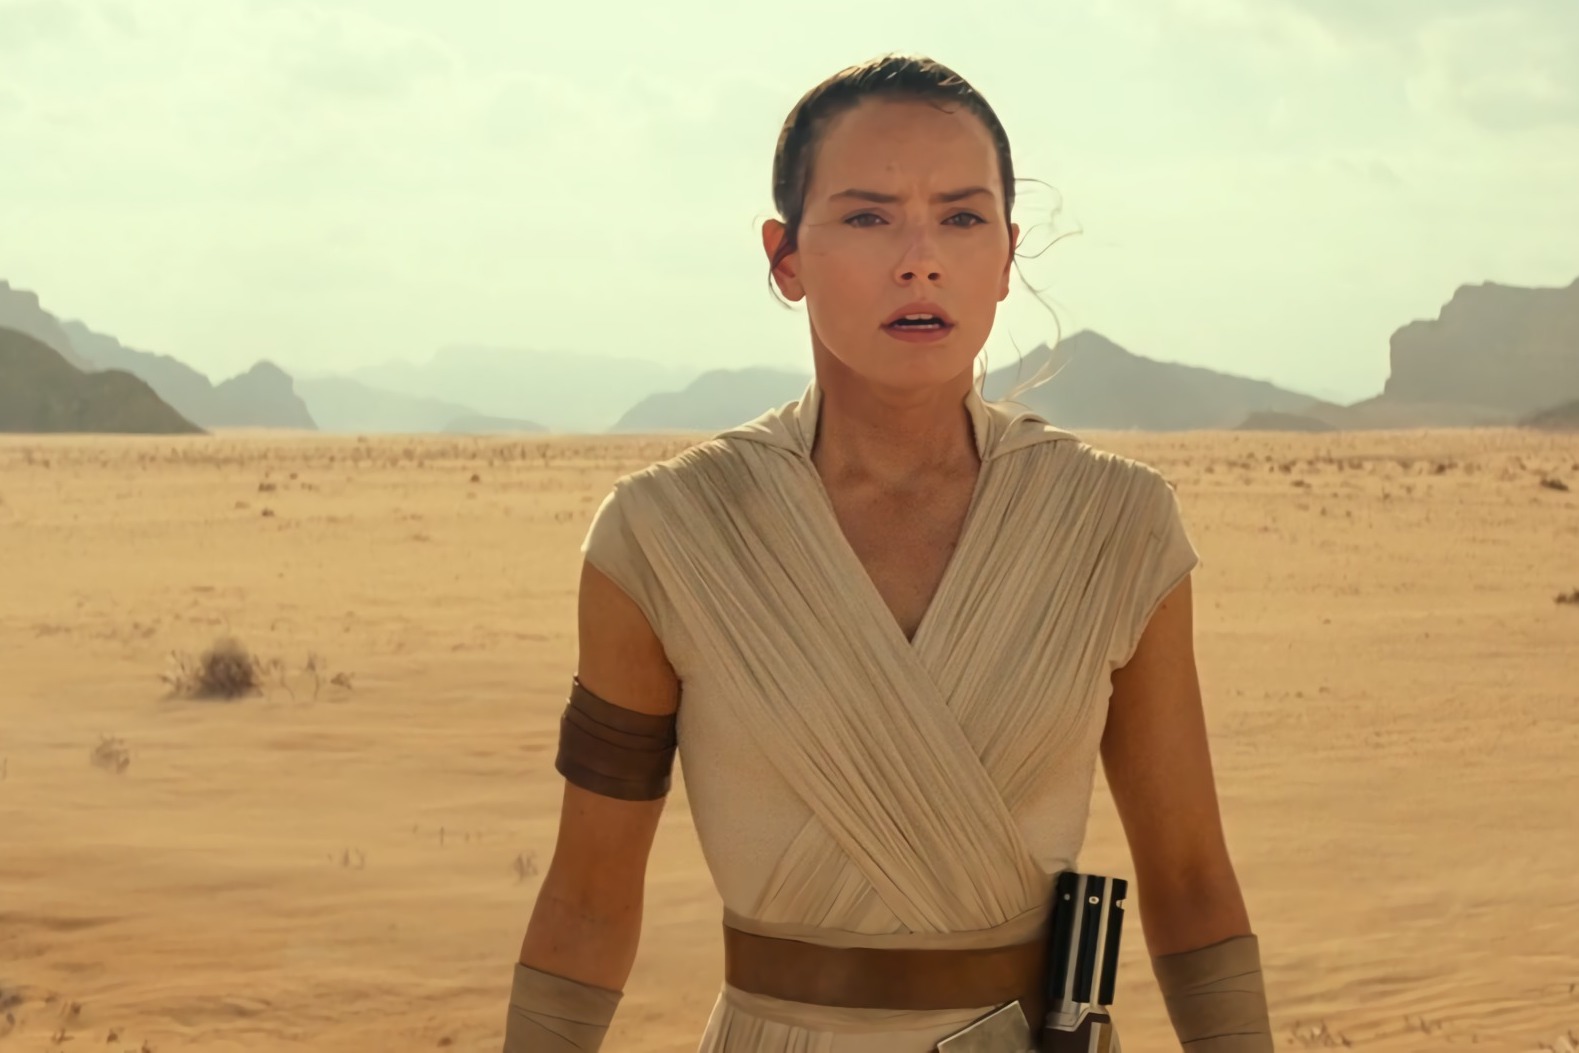 Watch: Star Wars Episode IX teaser trailer